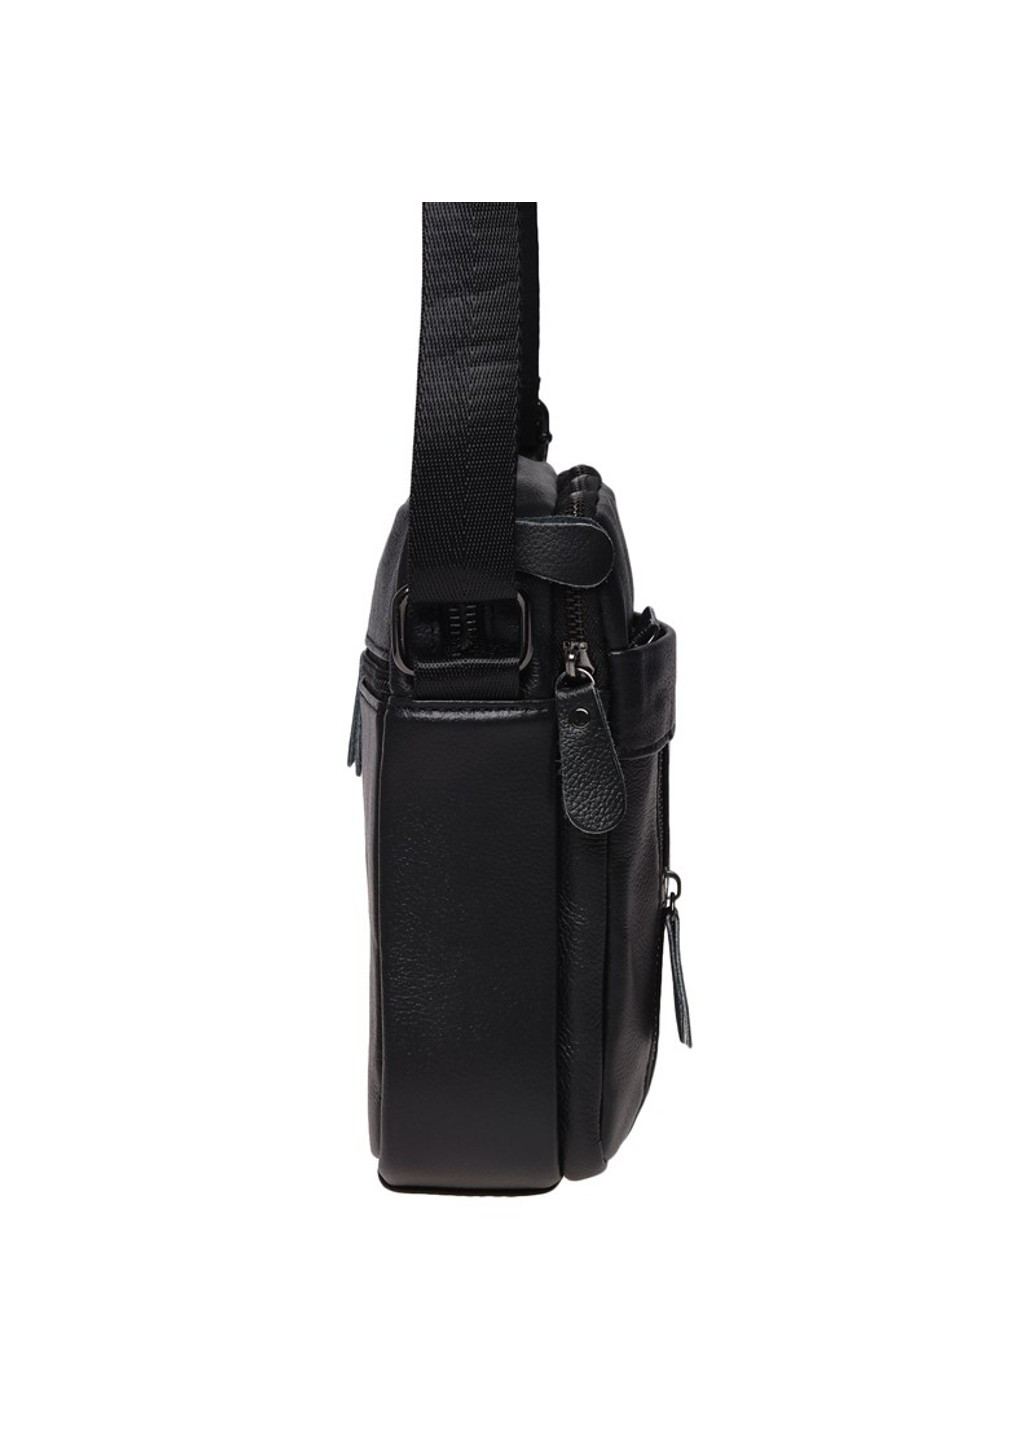 Мужская кожаная сумка K11169a-black Borsa Leather (266143871)